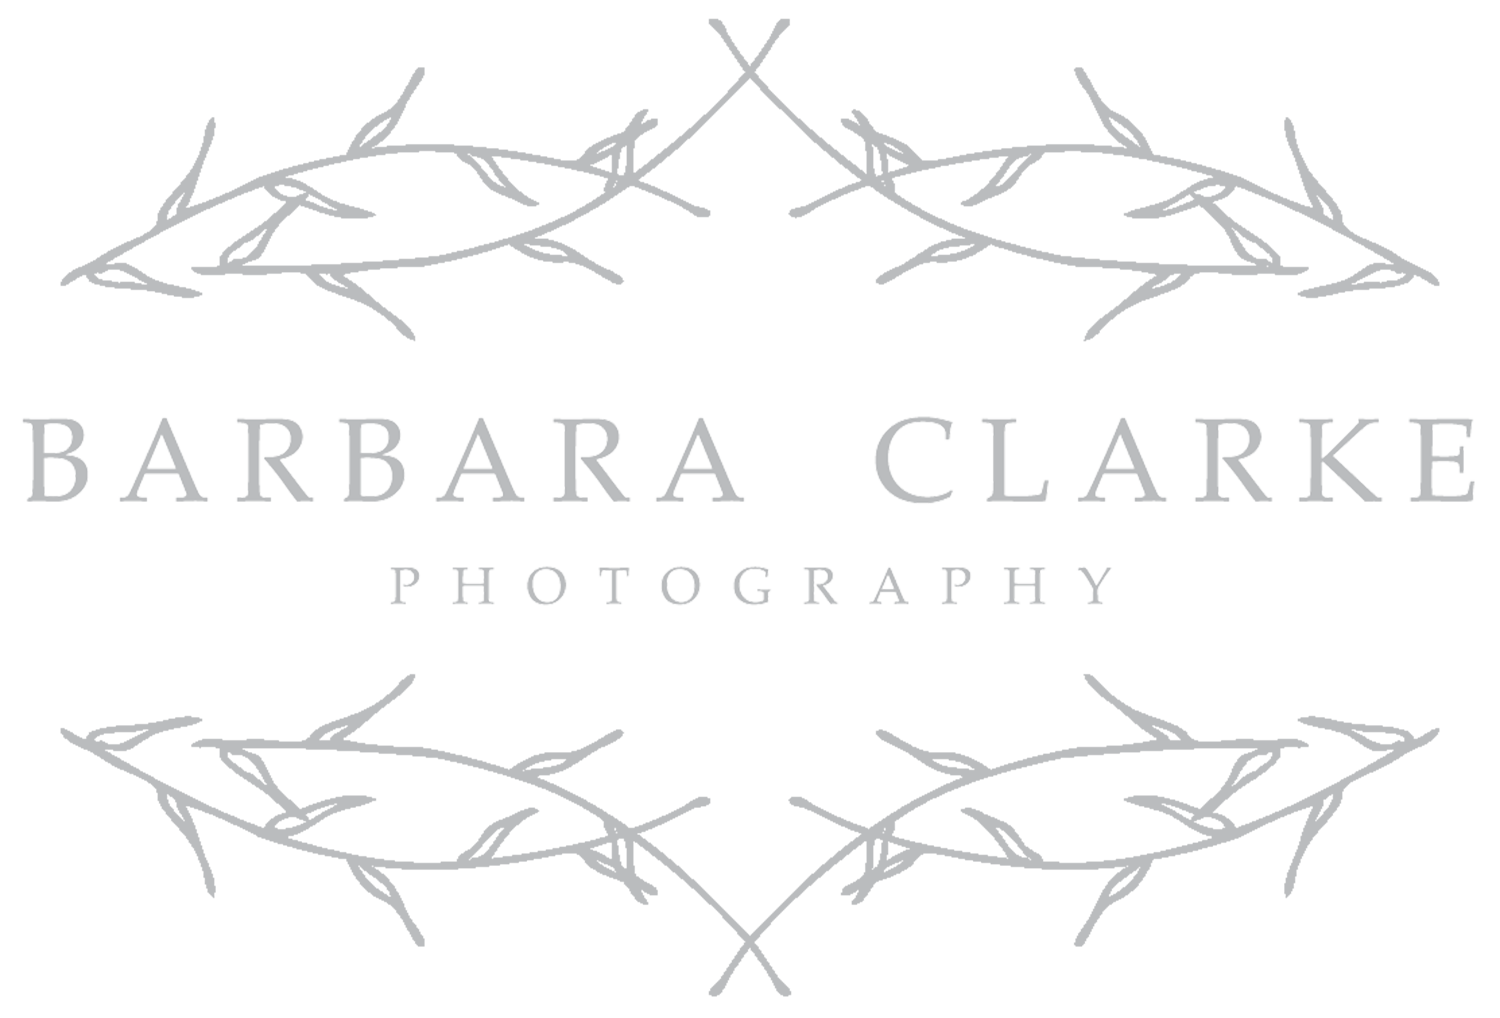 Barbara Clarke Photography